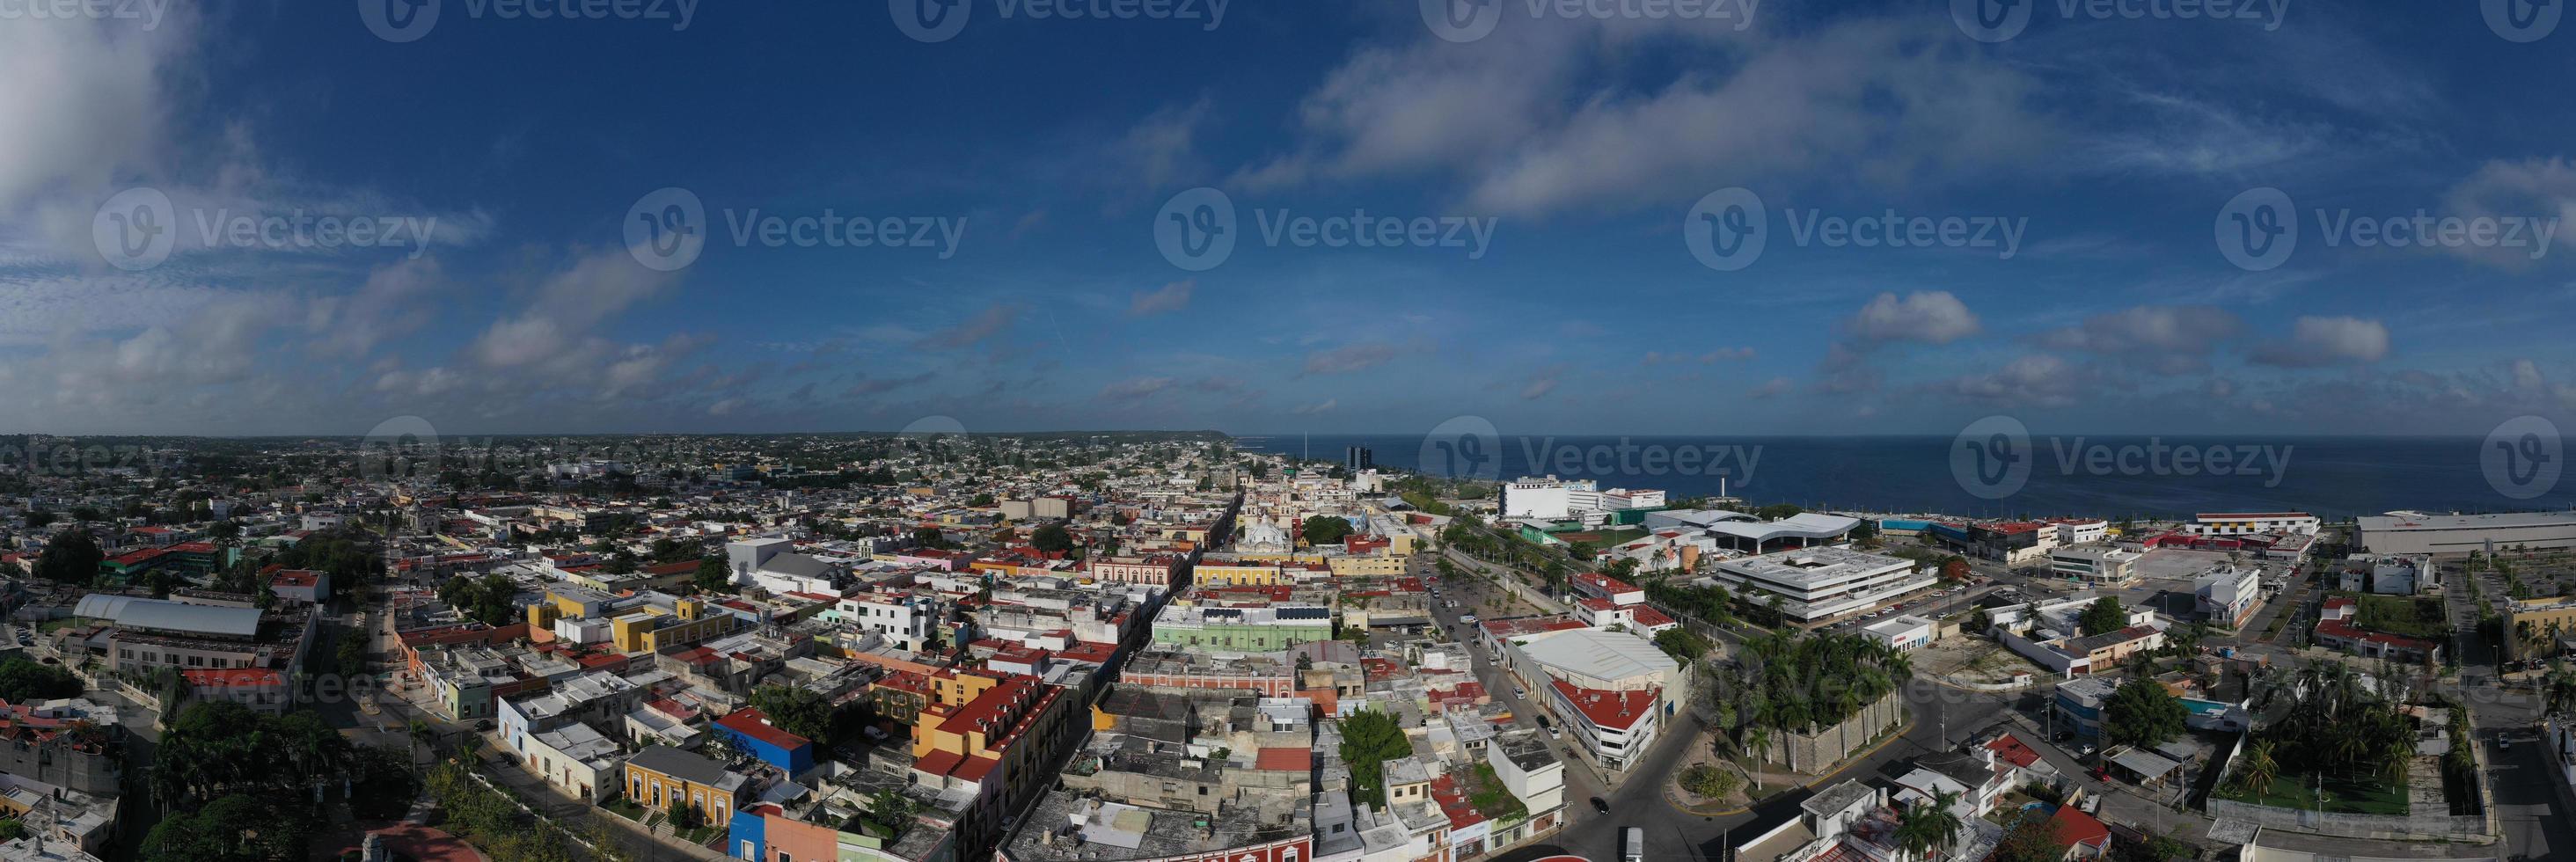 vista panorámica del horizonte de campeche, la capital del estado de campeche, patrimonio de la humanidad en méxico. foto